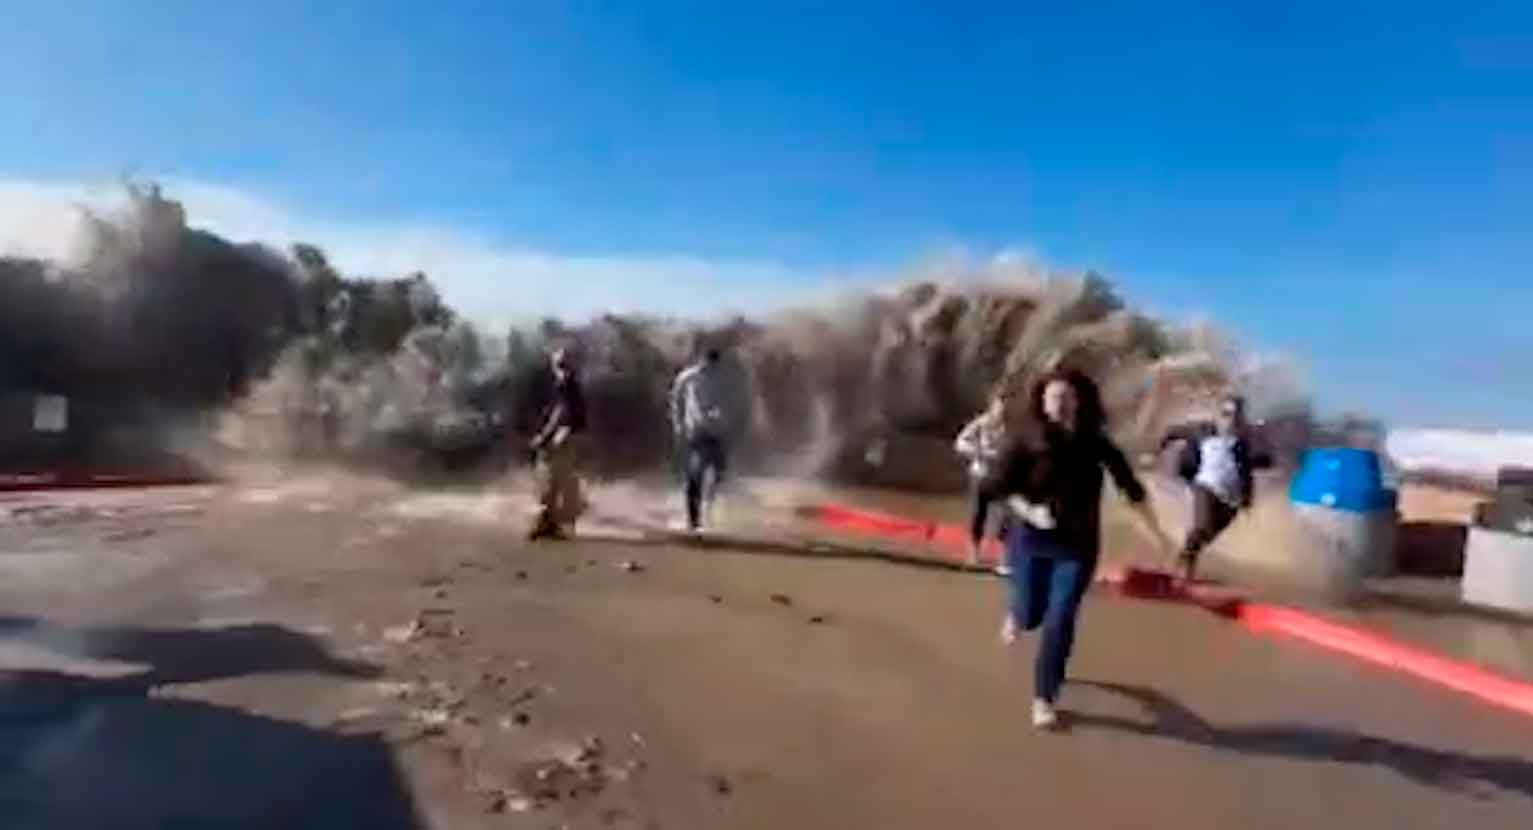 Video zachycuje okamžik, kdy obrovská vlna přelomila hradbu a zranila osm lidí. Fotky a videa: Reprodukce Twitter @Top_Disaster